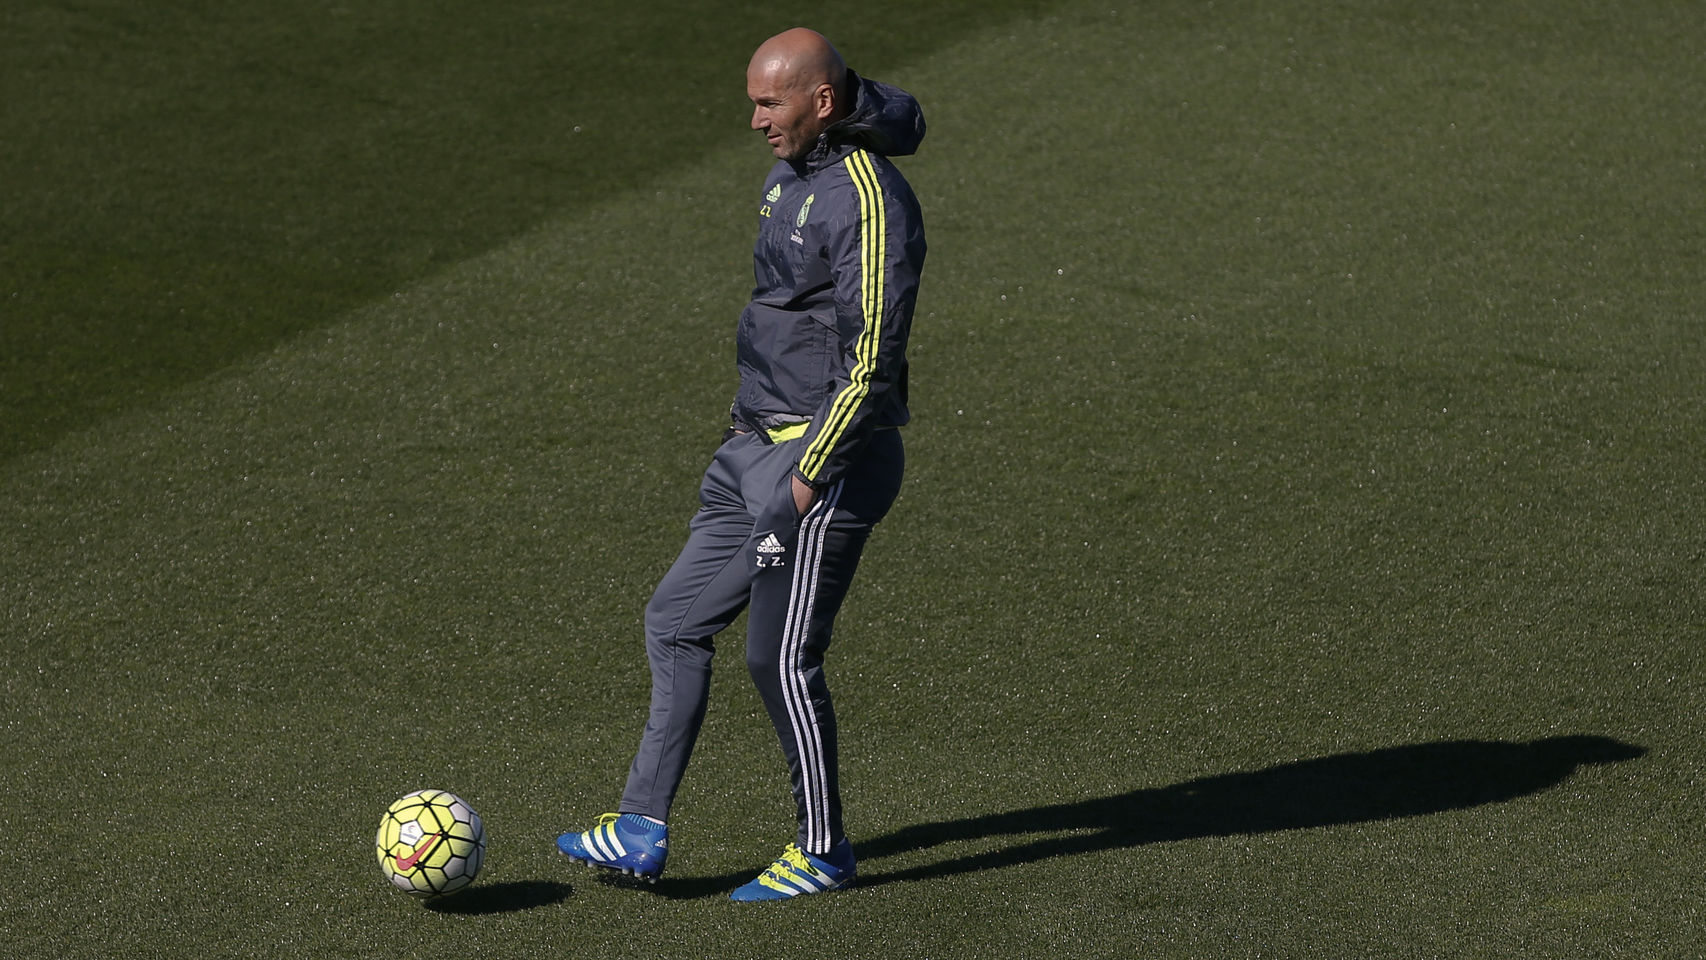 Zidane golpea el balón en un entrenamiento